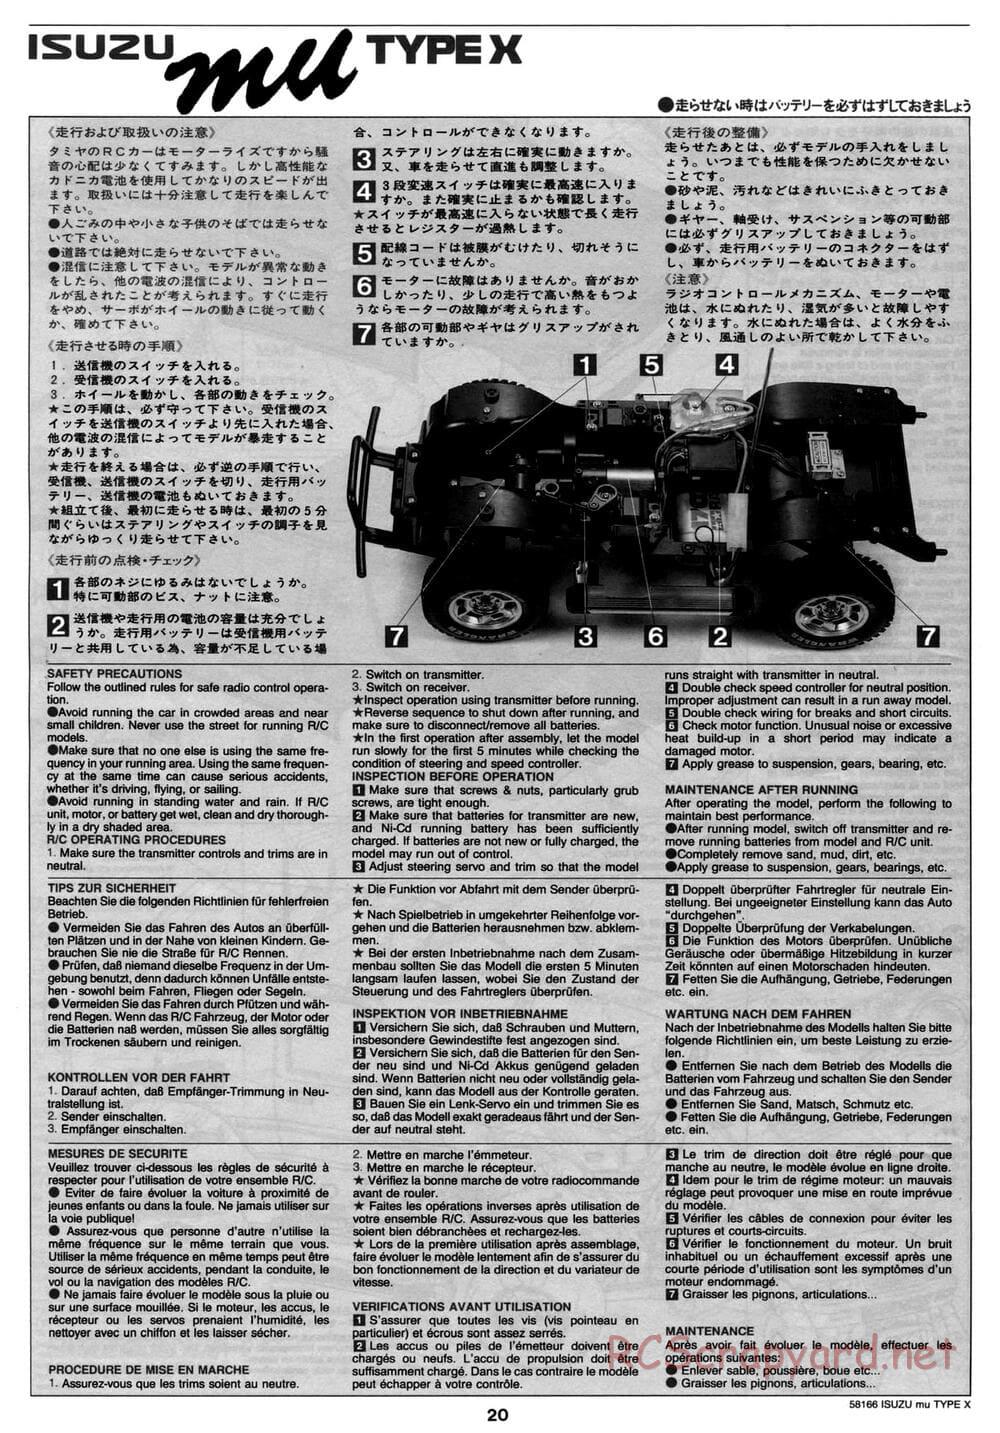 Tamiya - Isuzu Mu Type X - CC-01 Chassis - Manual - Page 20